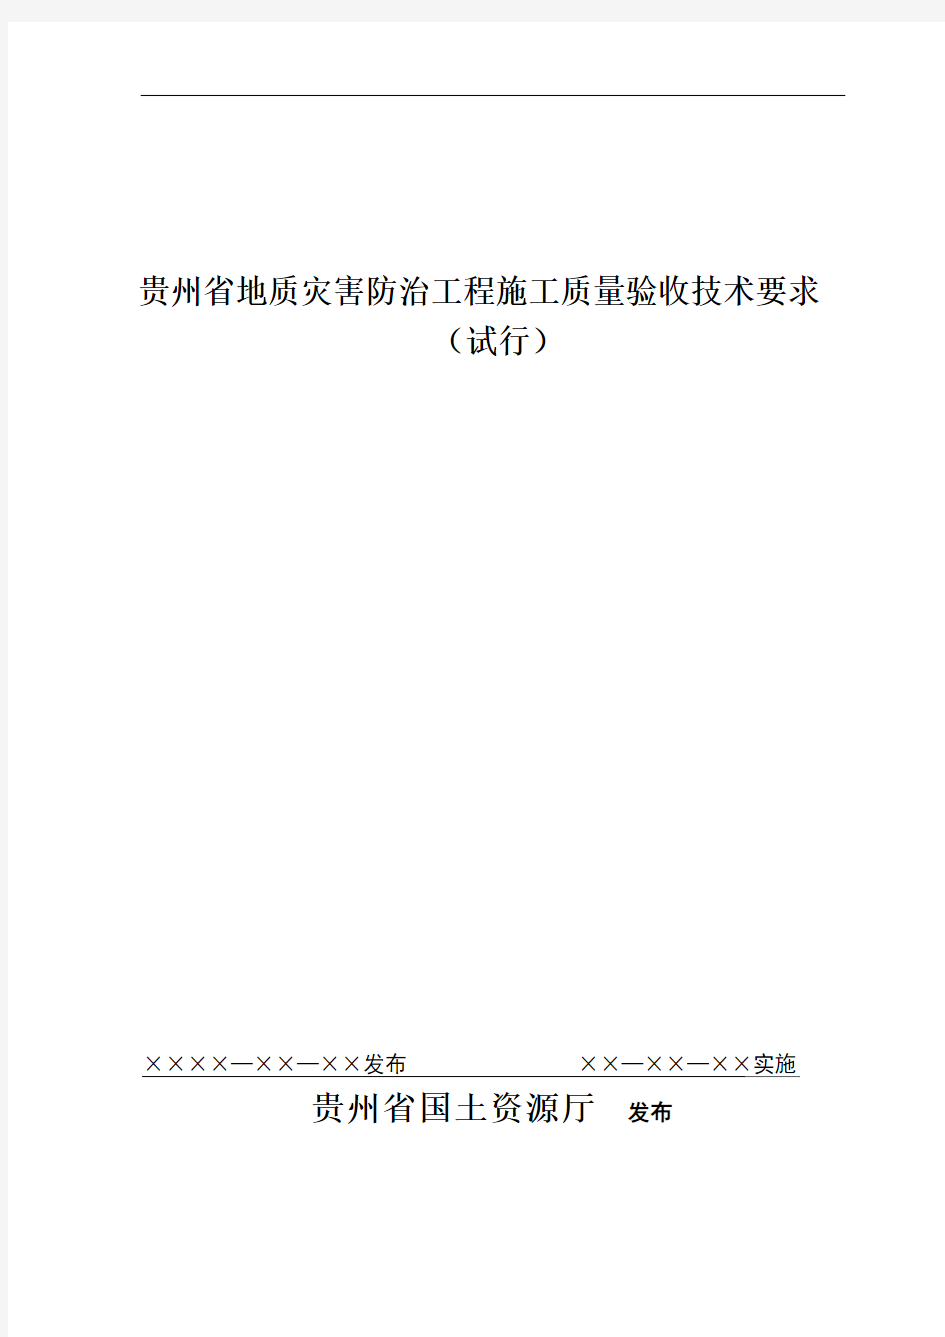 贵州省地质灾害防治工程施工质量验收技术要求(DZZ HSG-2008)